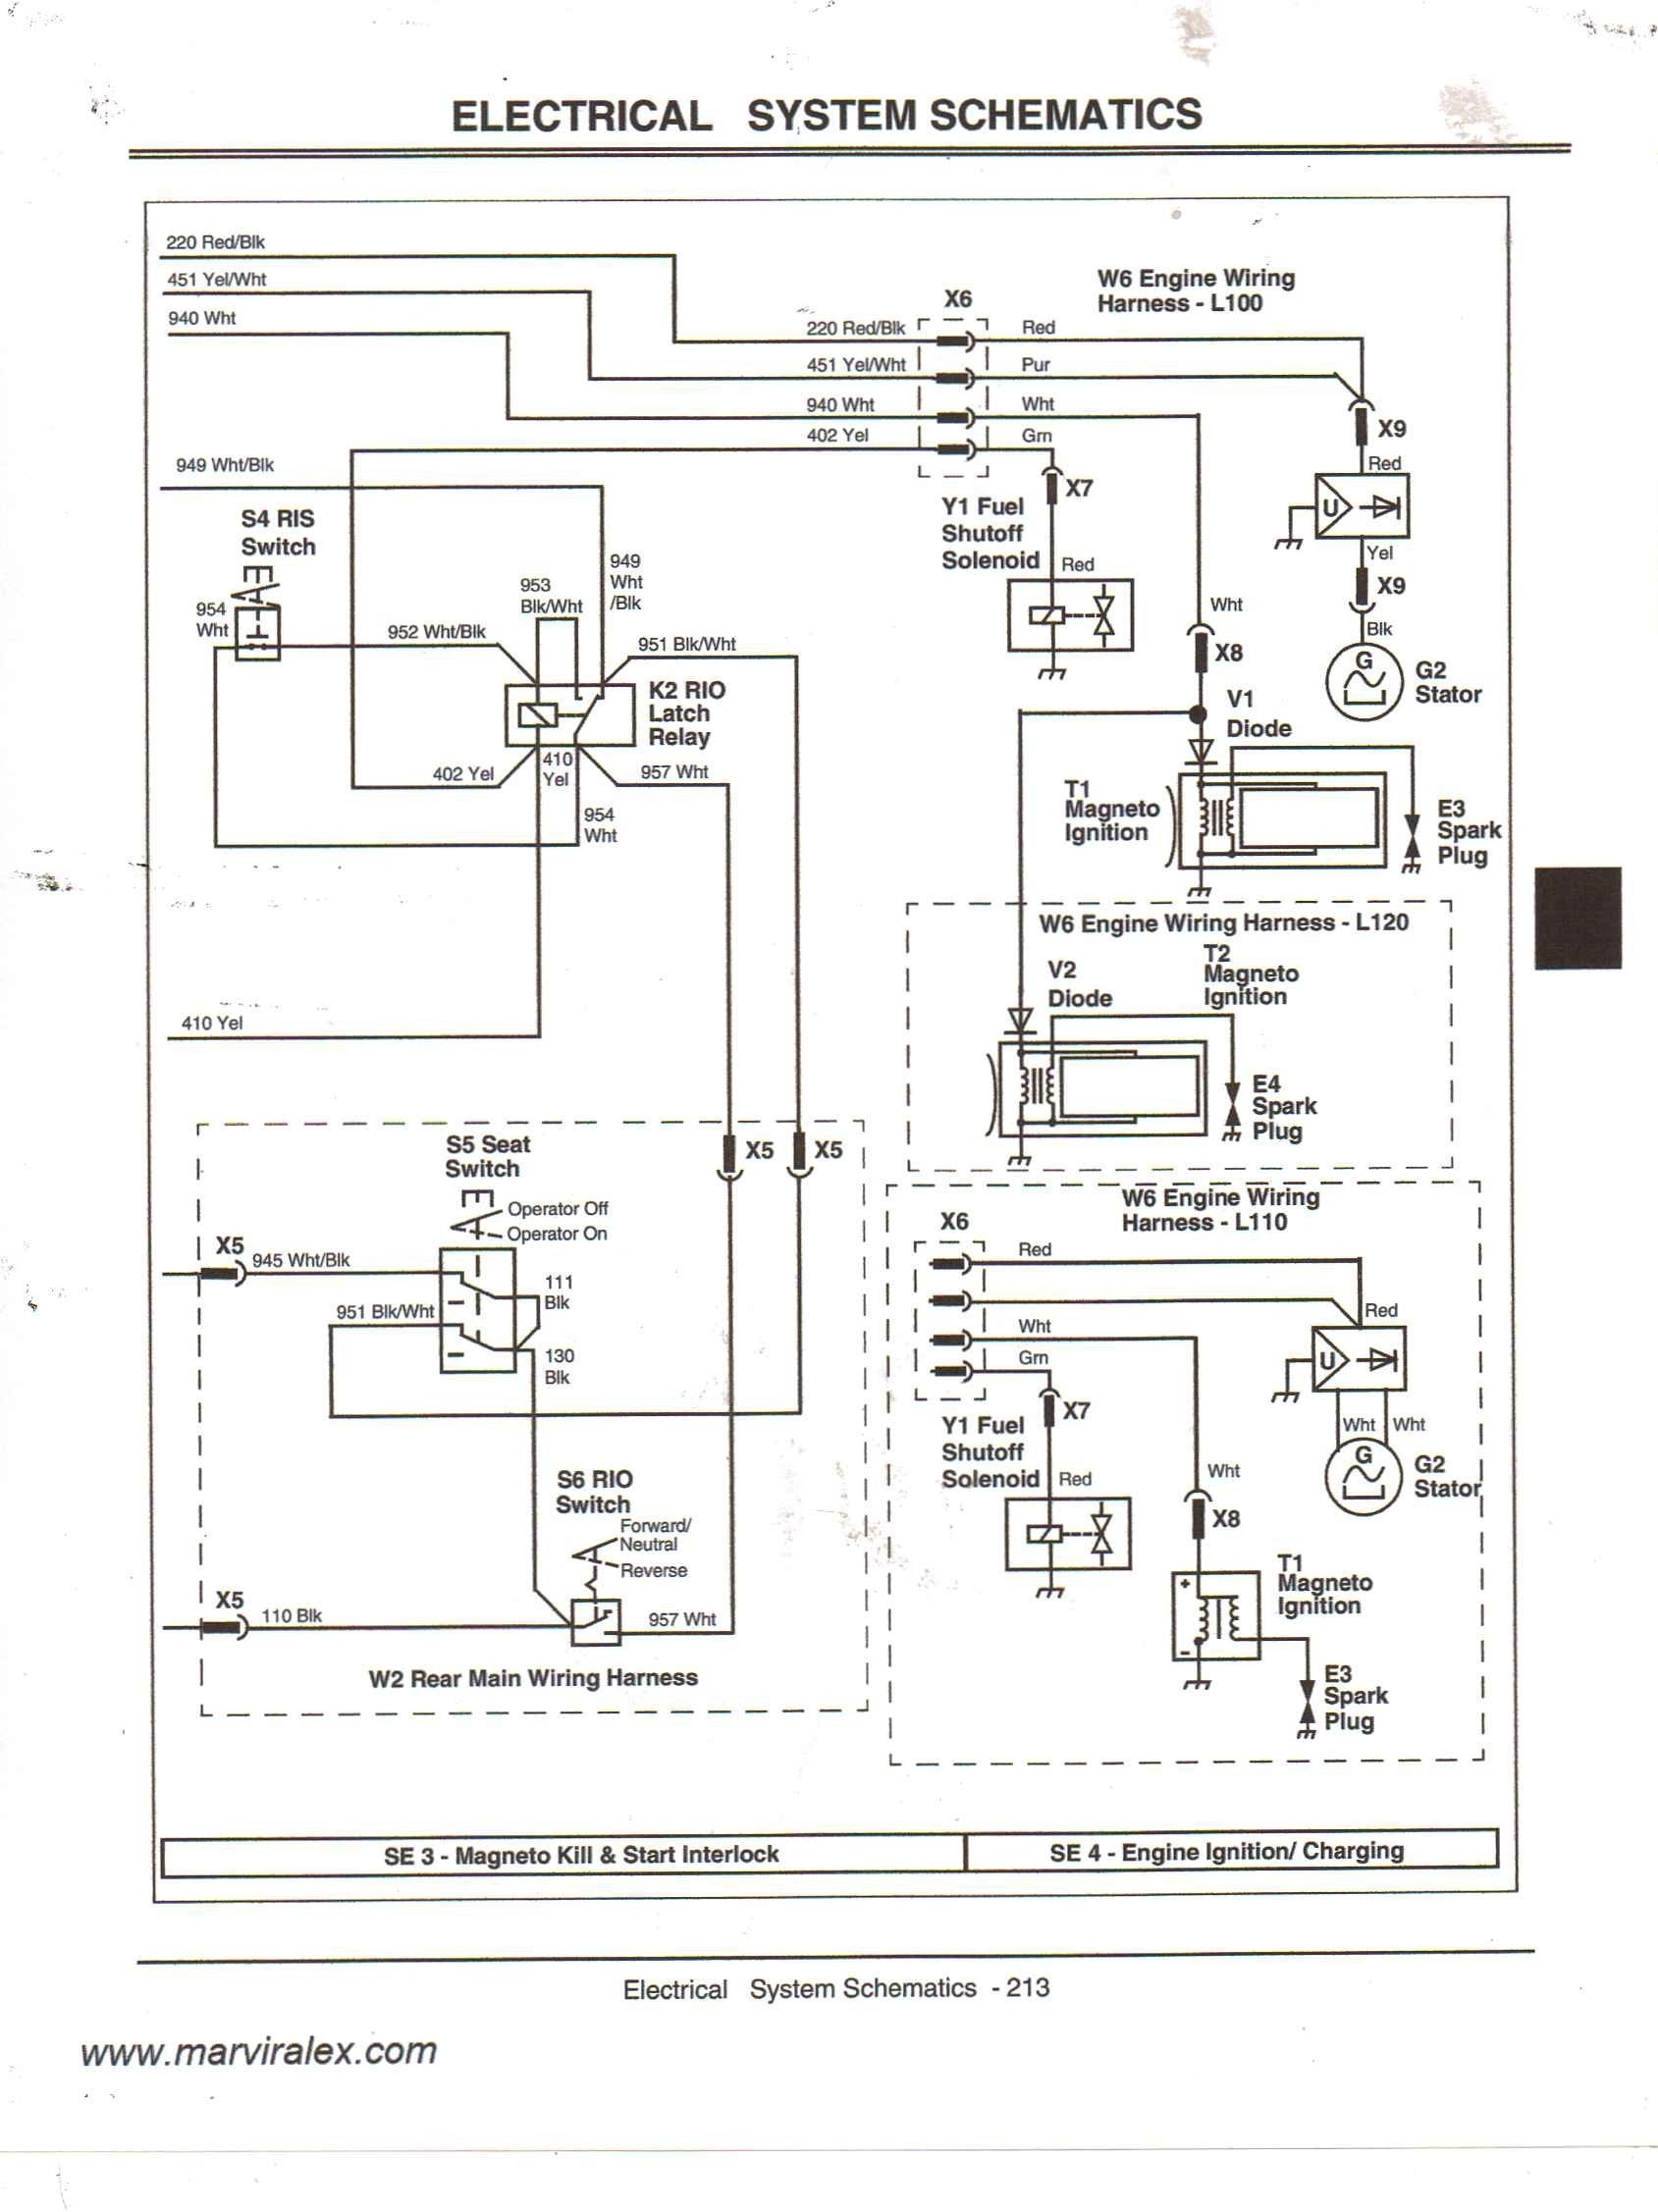 wiring diagram for john deere lt155 new john deere gator wiring of john deere wiring diagram